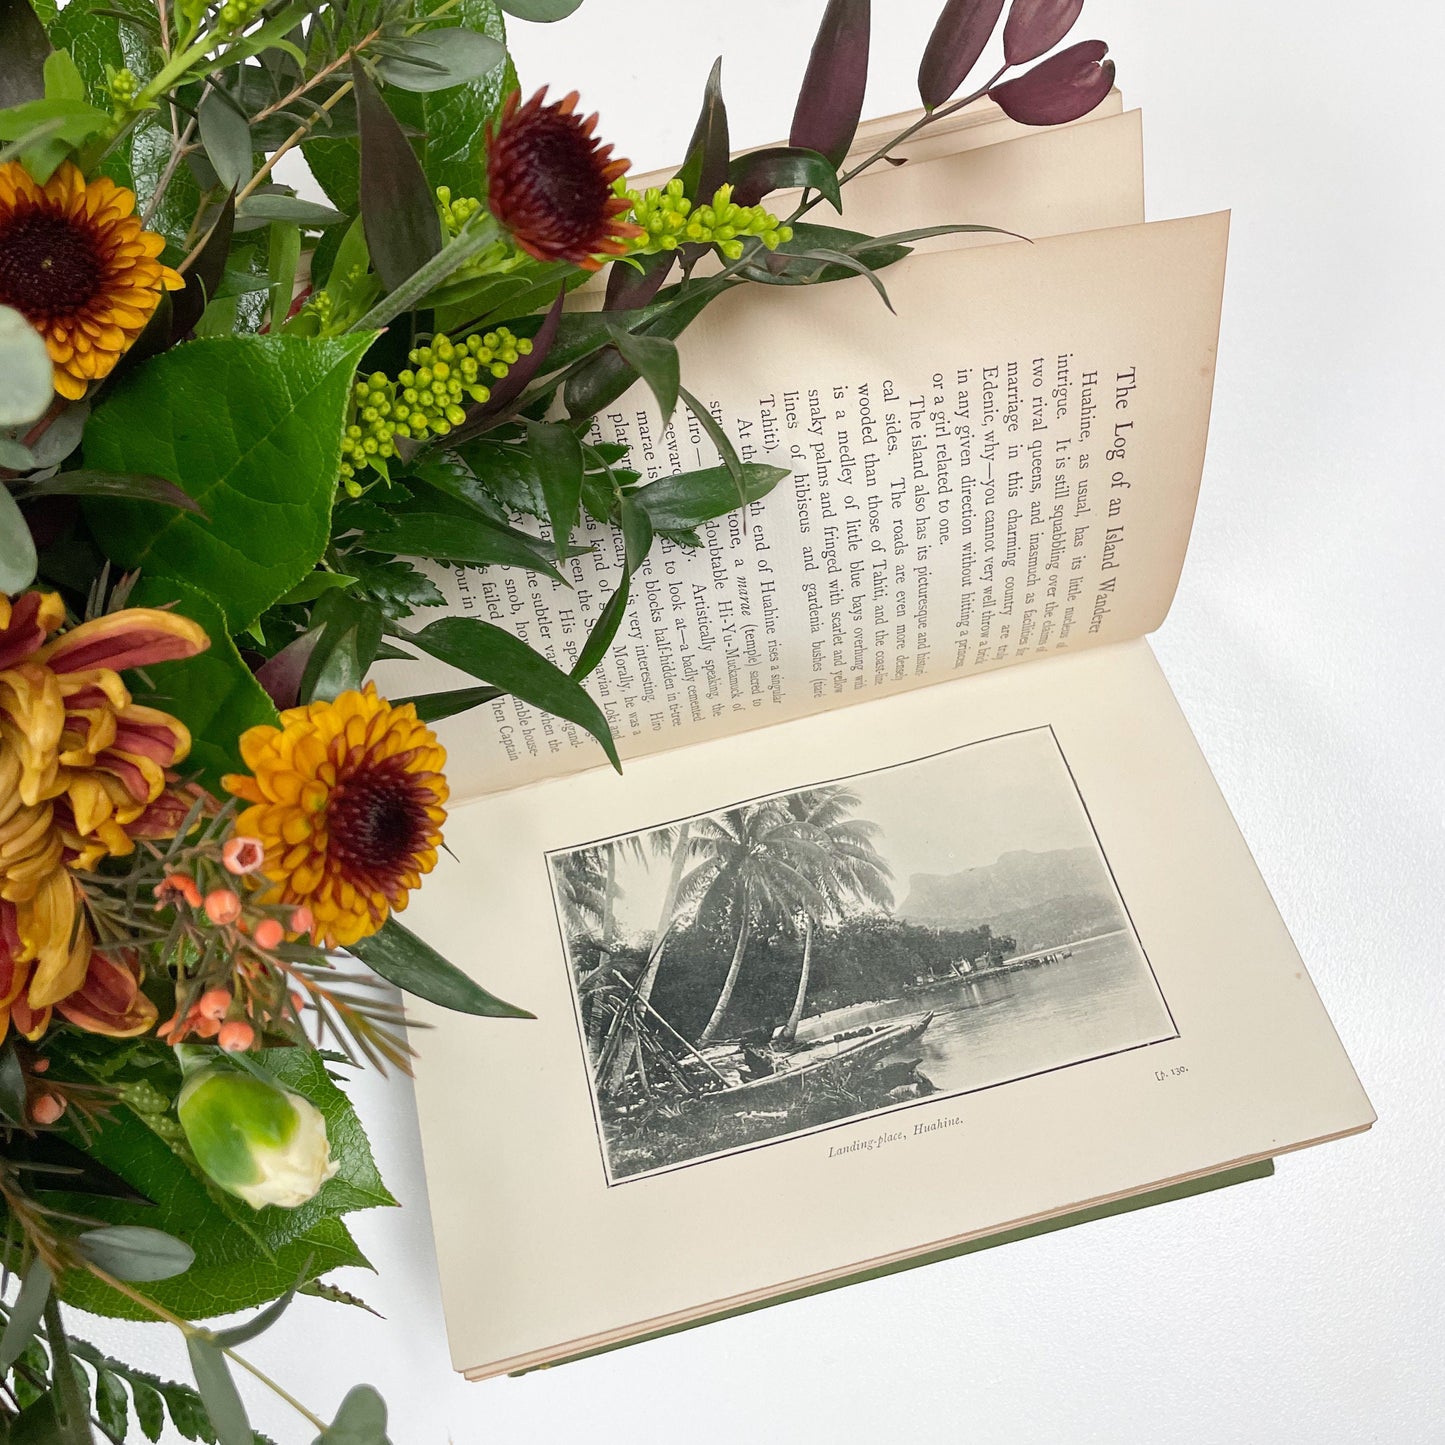 Antique Book, The Log of an Island Wanderer by Edwin Pallander